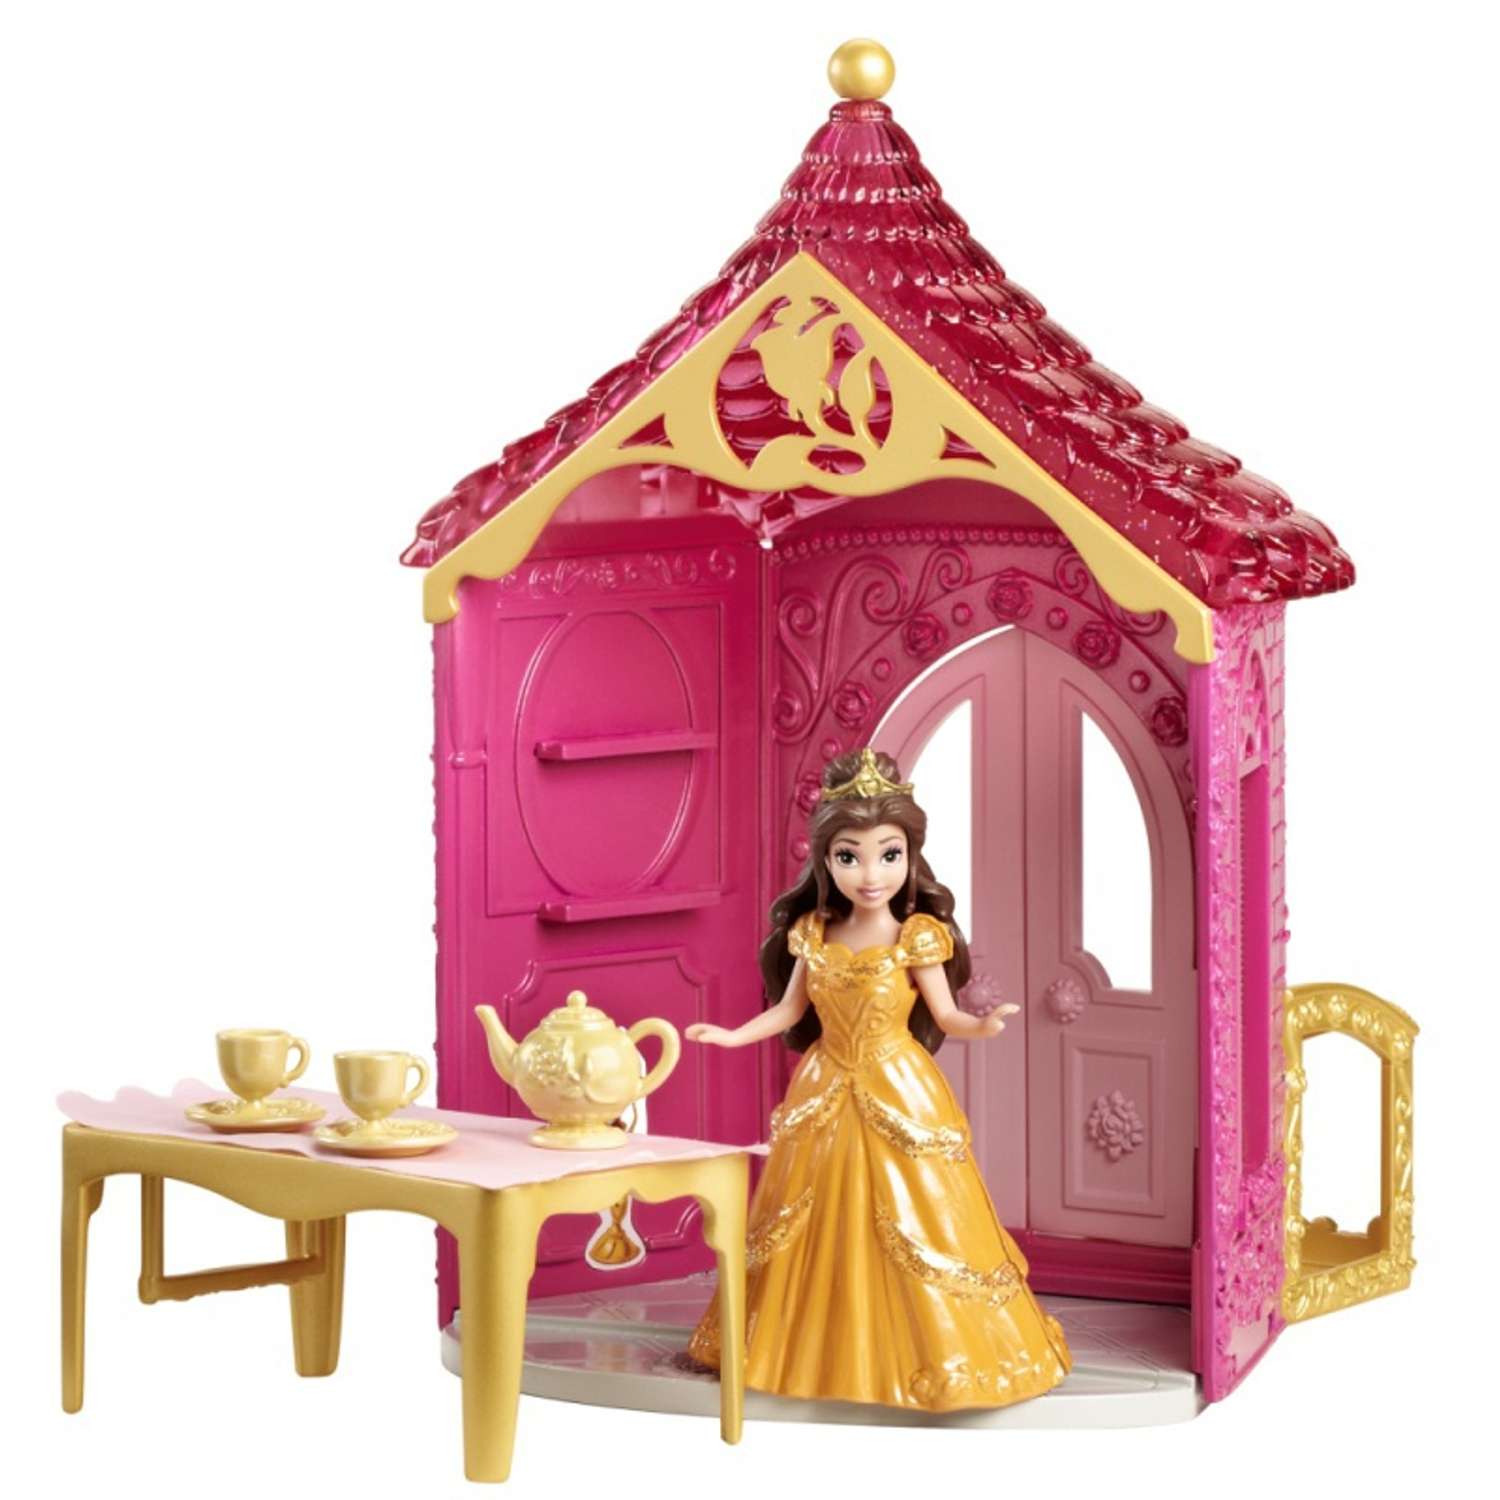 Комната Принцессы Disney Princess кукла с аксуарами в наборе в ассортименте BDJ97(BDJ98/BDJ99/BDK01) - фото 2